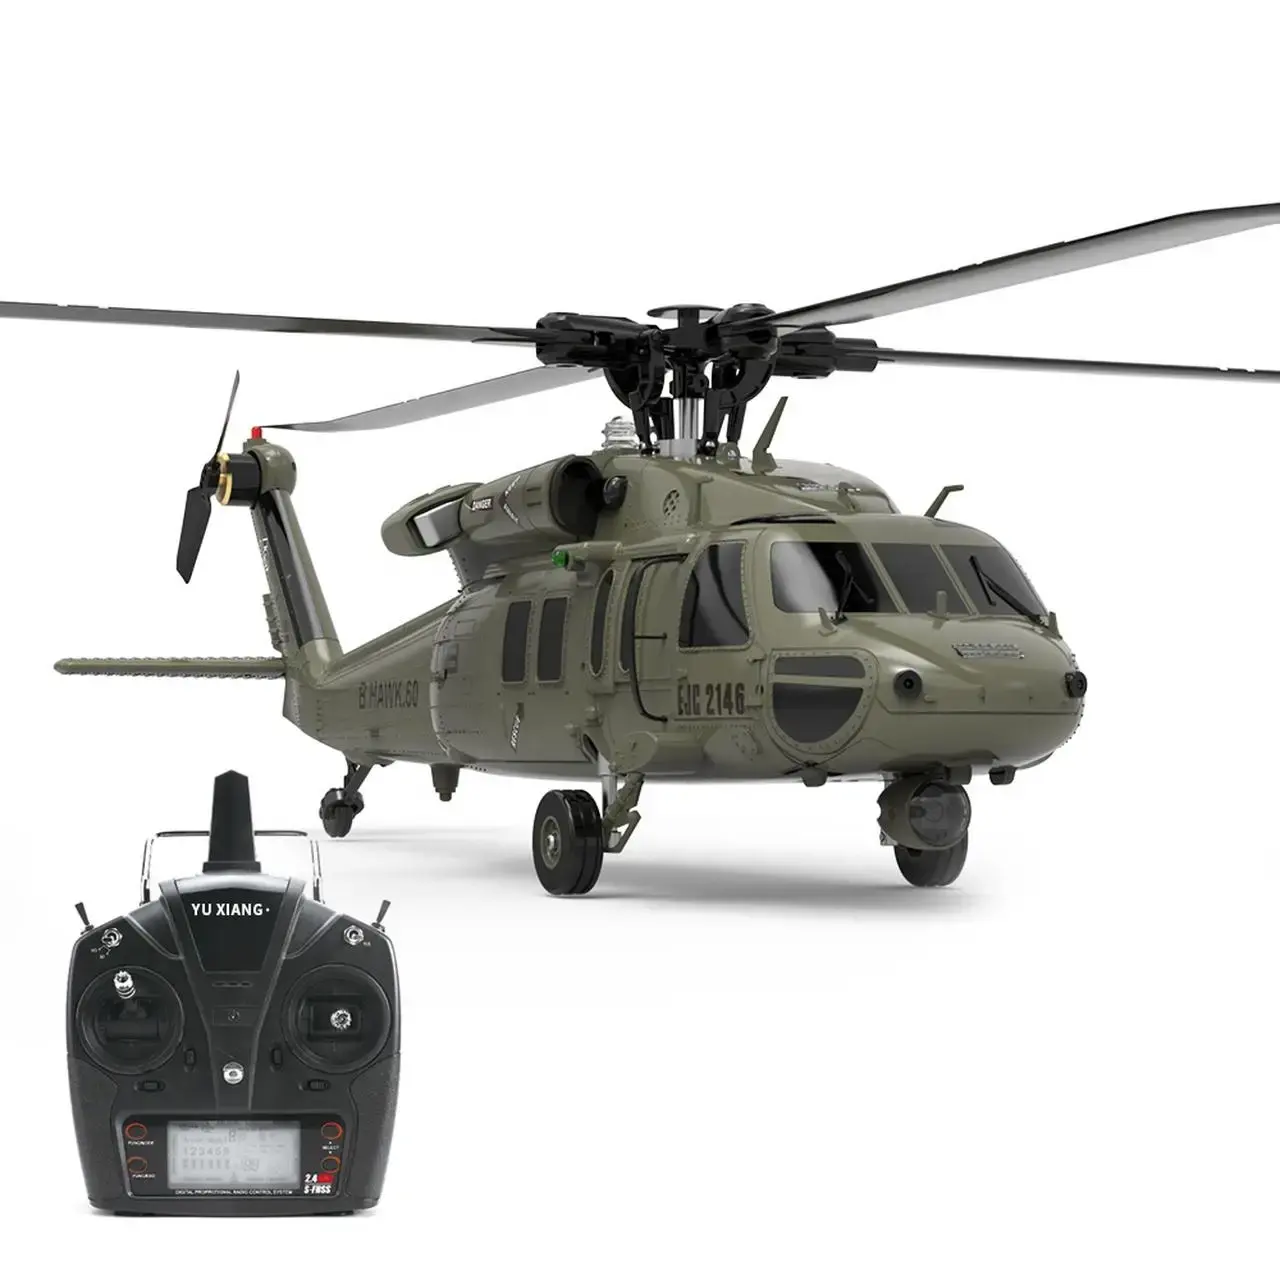 Pesawat Rc simulasi nyata F09 UH60 Black Hawk Flybarless RC helikopter 6 CH 1/47 skala untuk hobi pribadi mainan versi mandiri